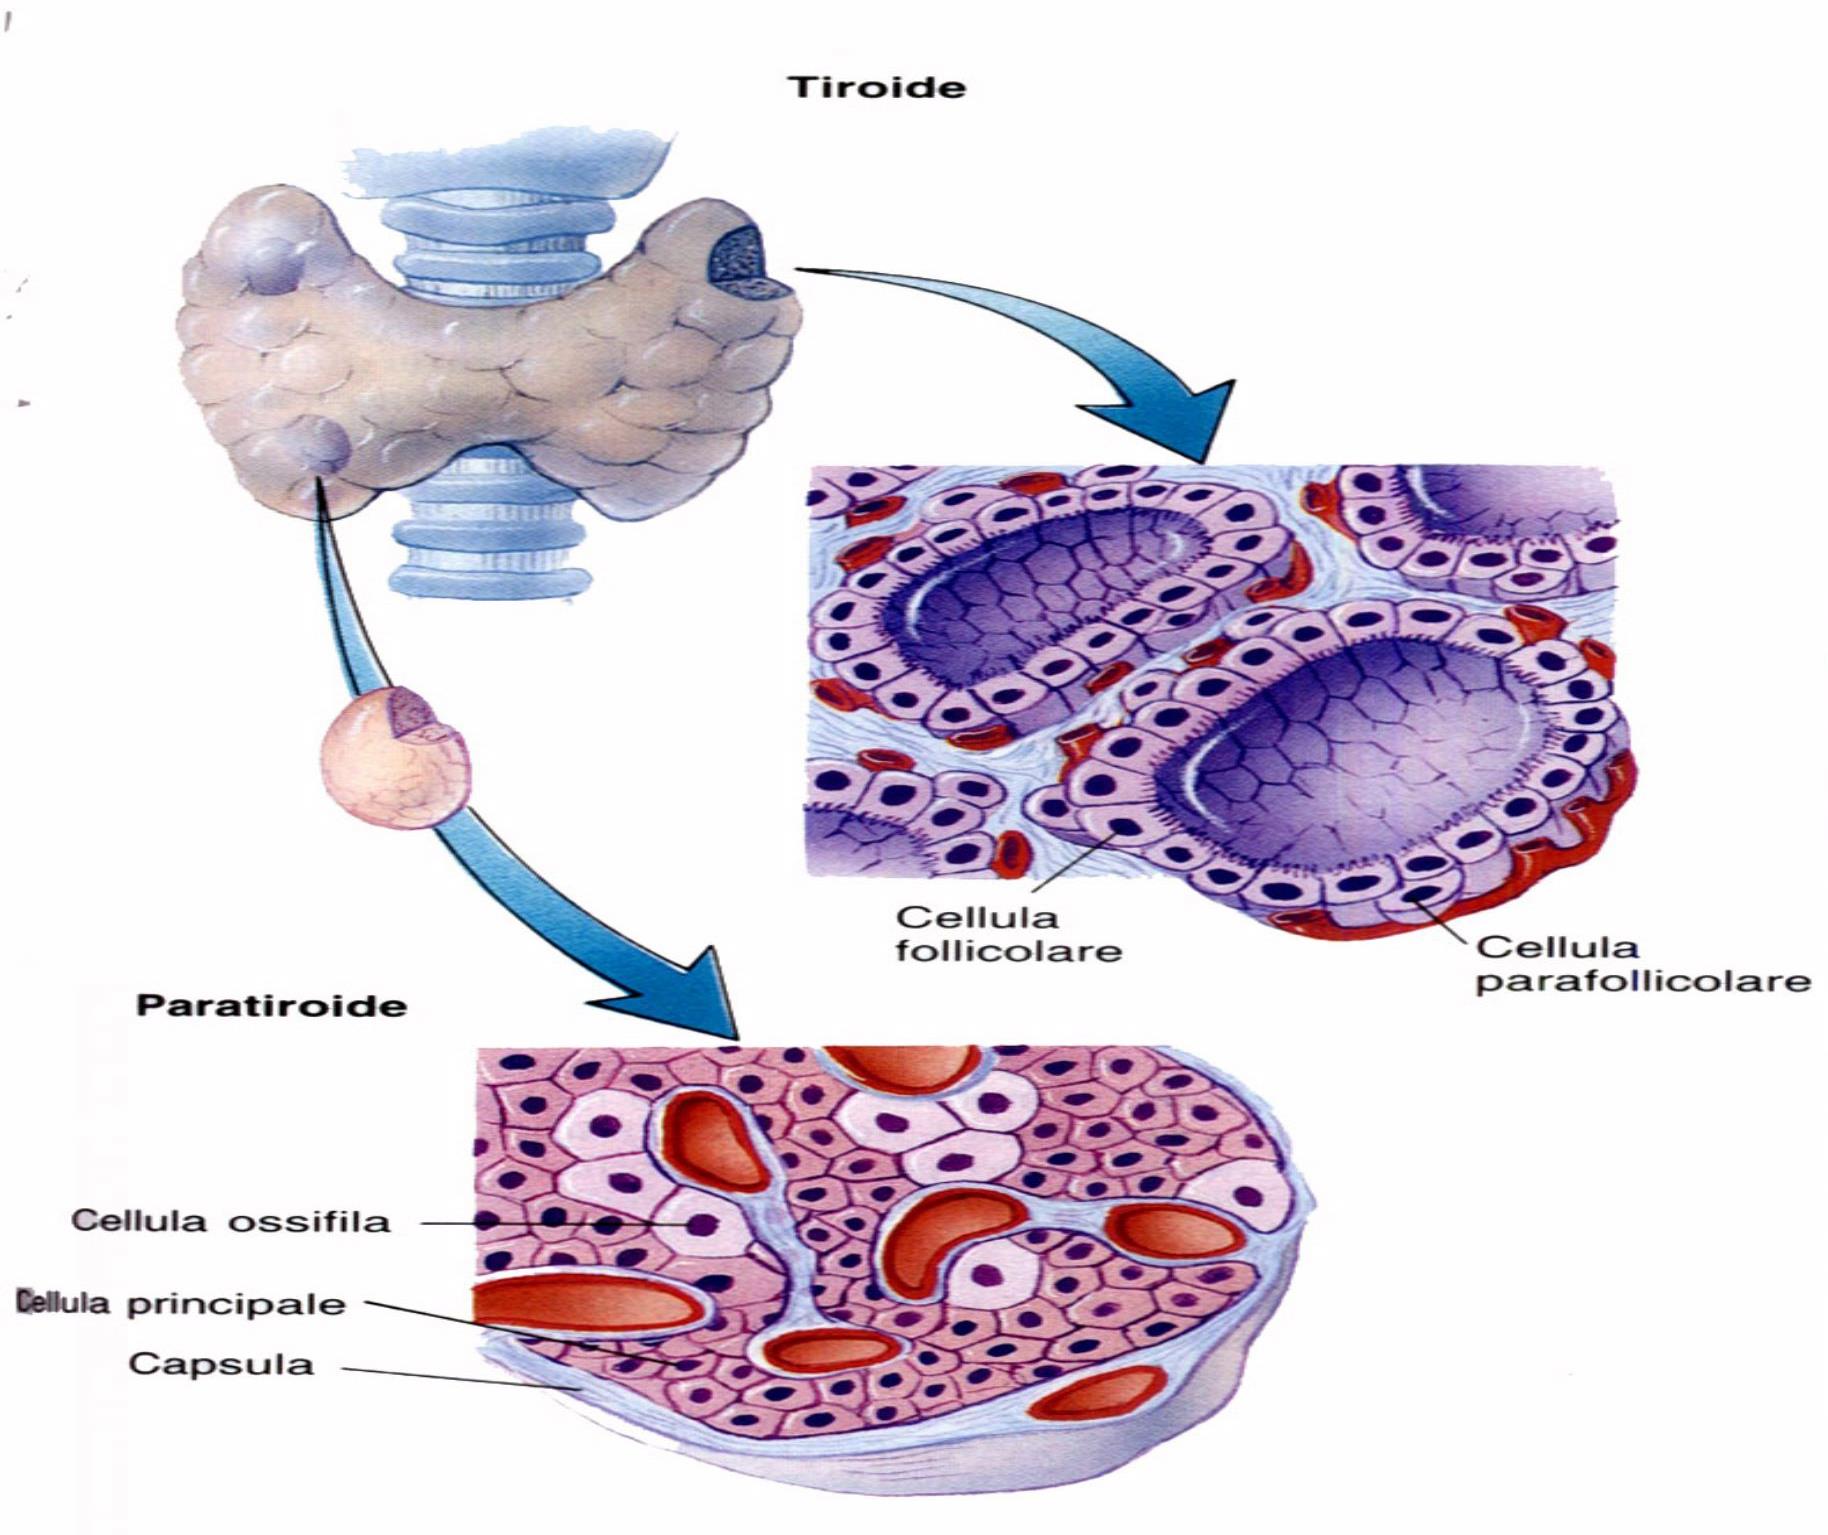 Tiroide Struttura a follicoli: piccoli sacchi sferici delimitati da cellule follicolari (tireociti) T4: tetraiodiotironina o tiroxina (4 atomi di Iodio) T3: